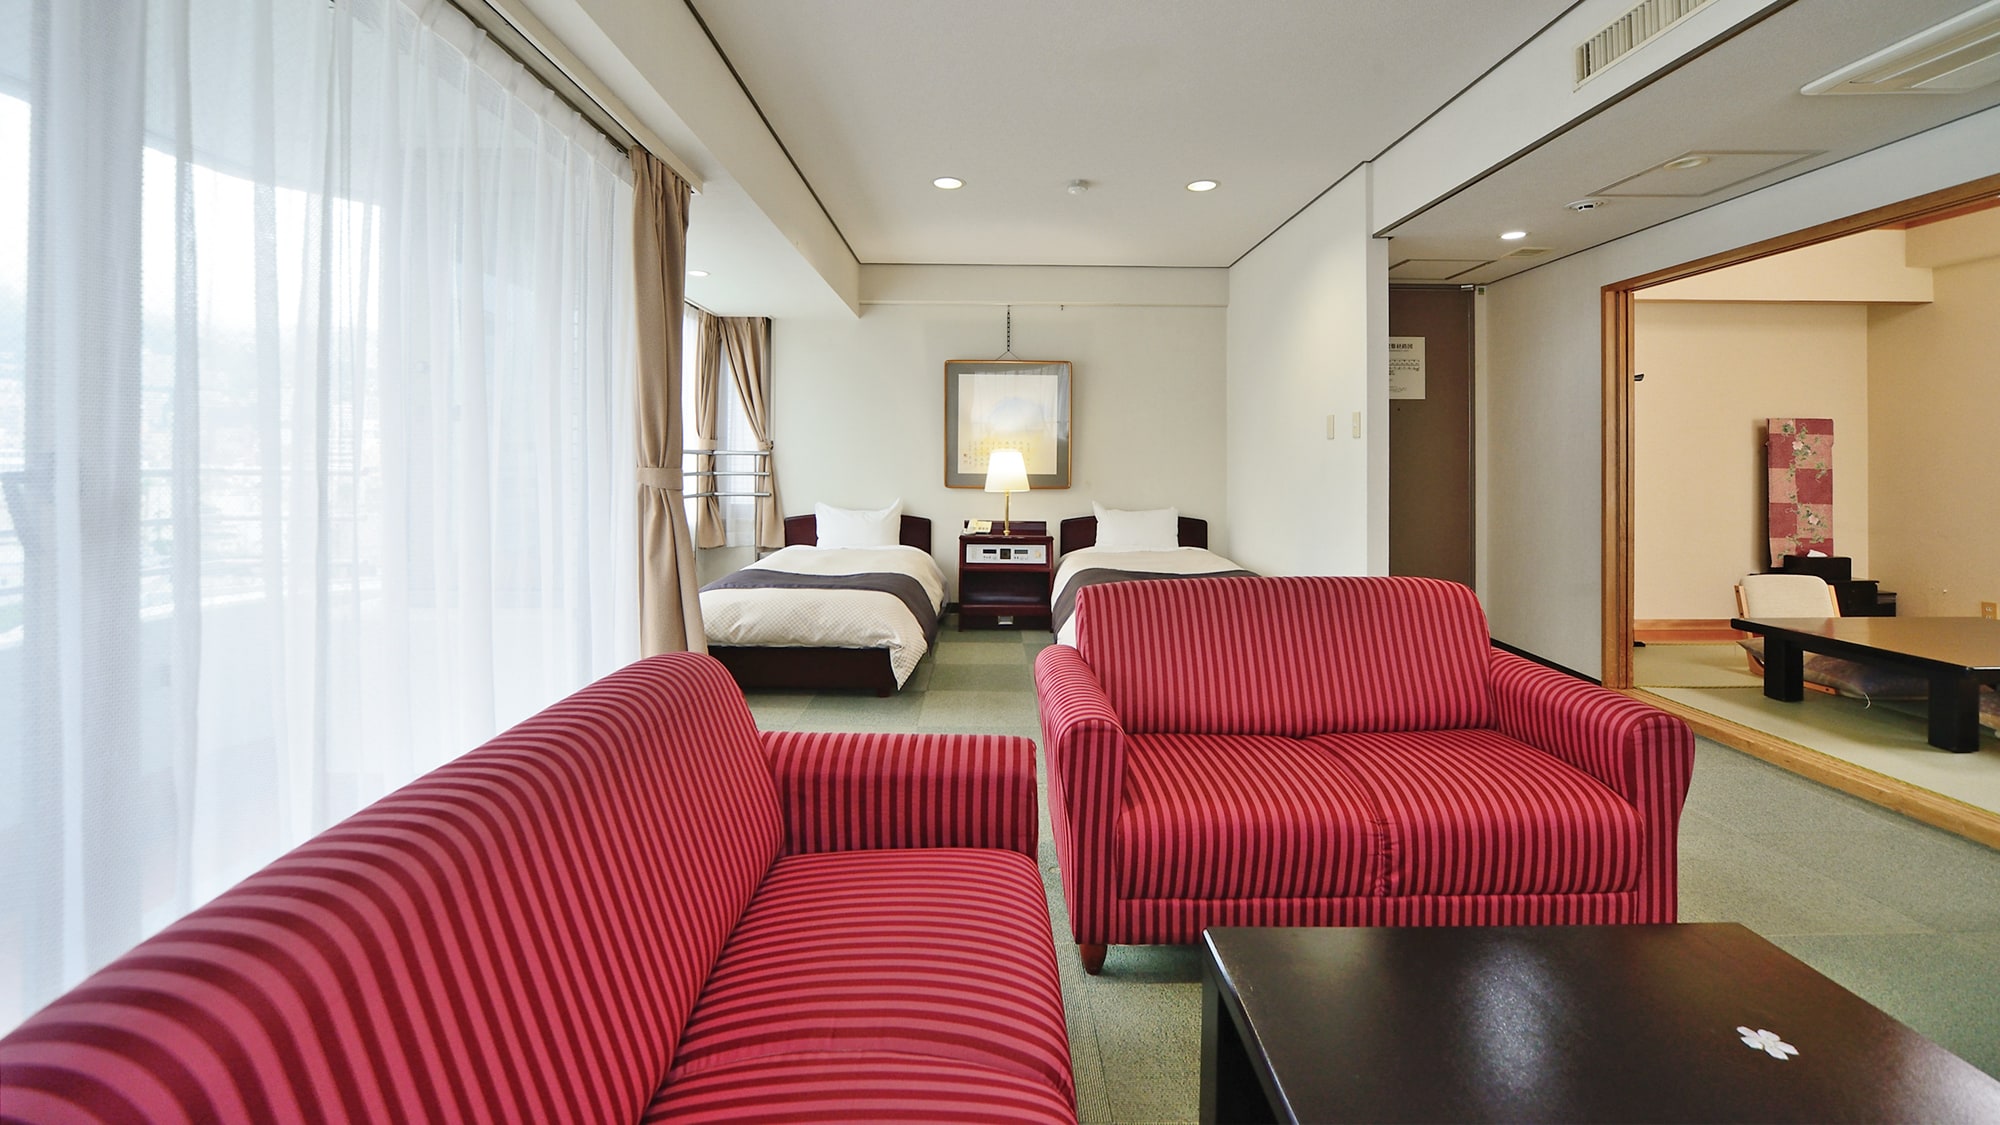 [Kamar Jepang dan Barat 44 meter persegi] Satu kamar tersedia di setiap lantai dari lantai 3 hingga lantai 8 (tingkat tidak dapat ditentukan).